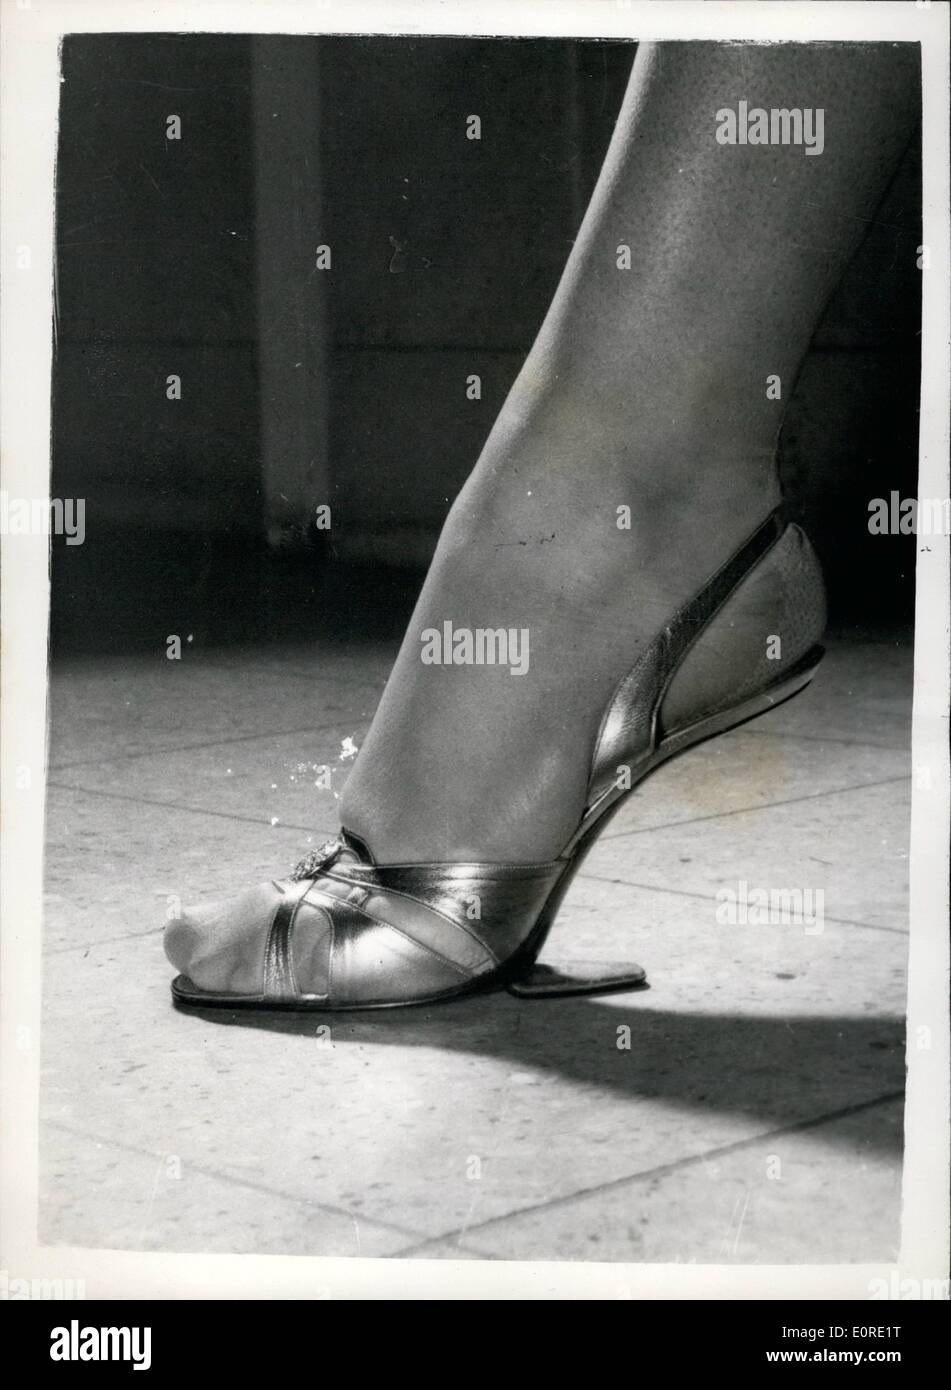 Febbraio 02, 1959 - qui è la SHOW SHOW DEL FUTURO - LA SCARPA con tacchi  non qui è la scarpa del futuro per la femmina la calzatura che non avrete  mai